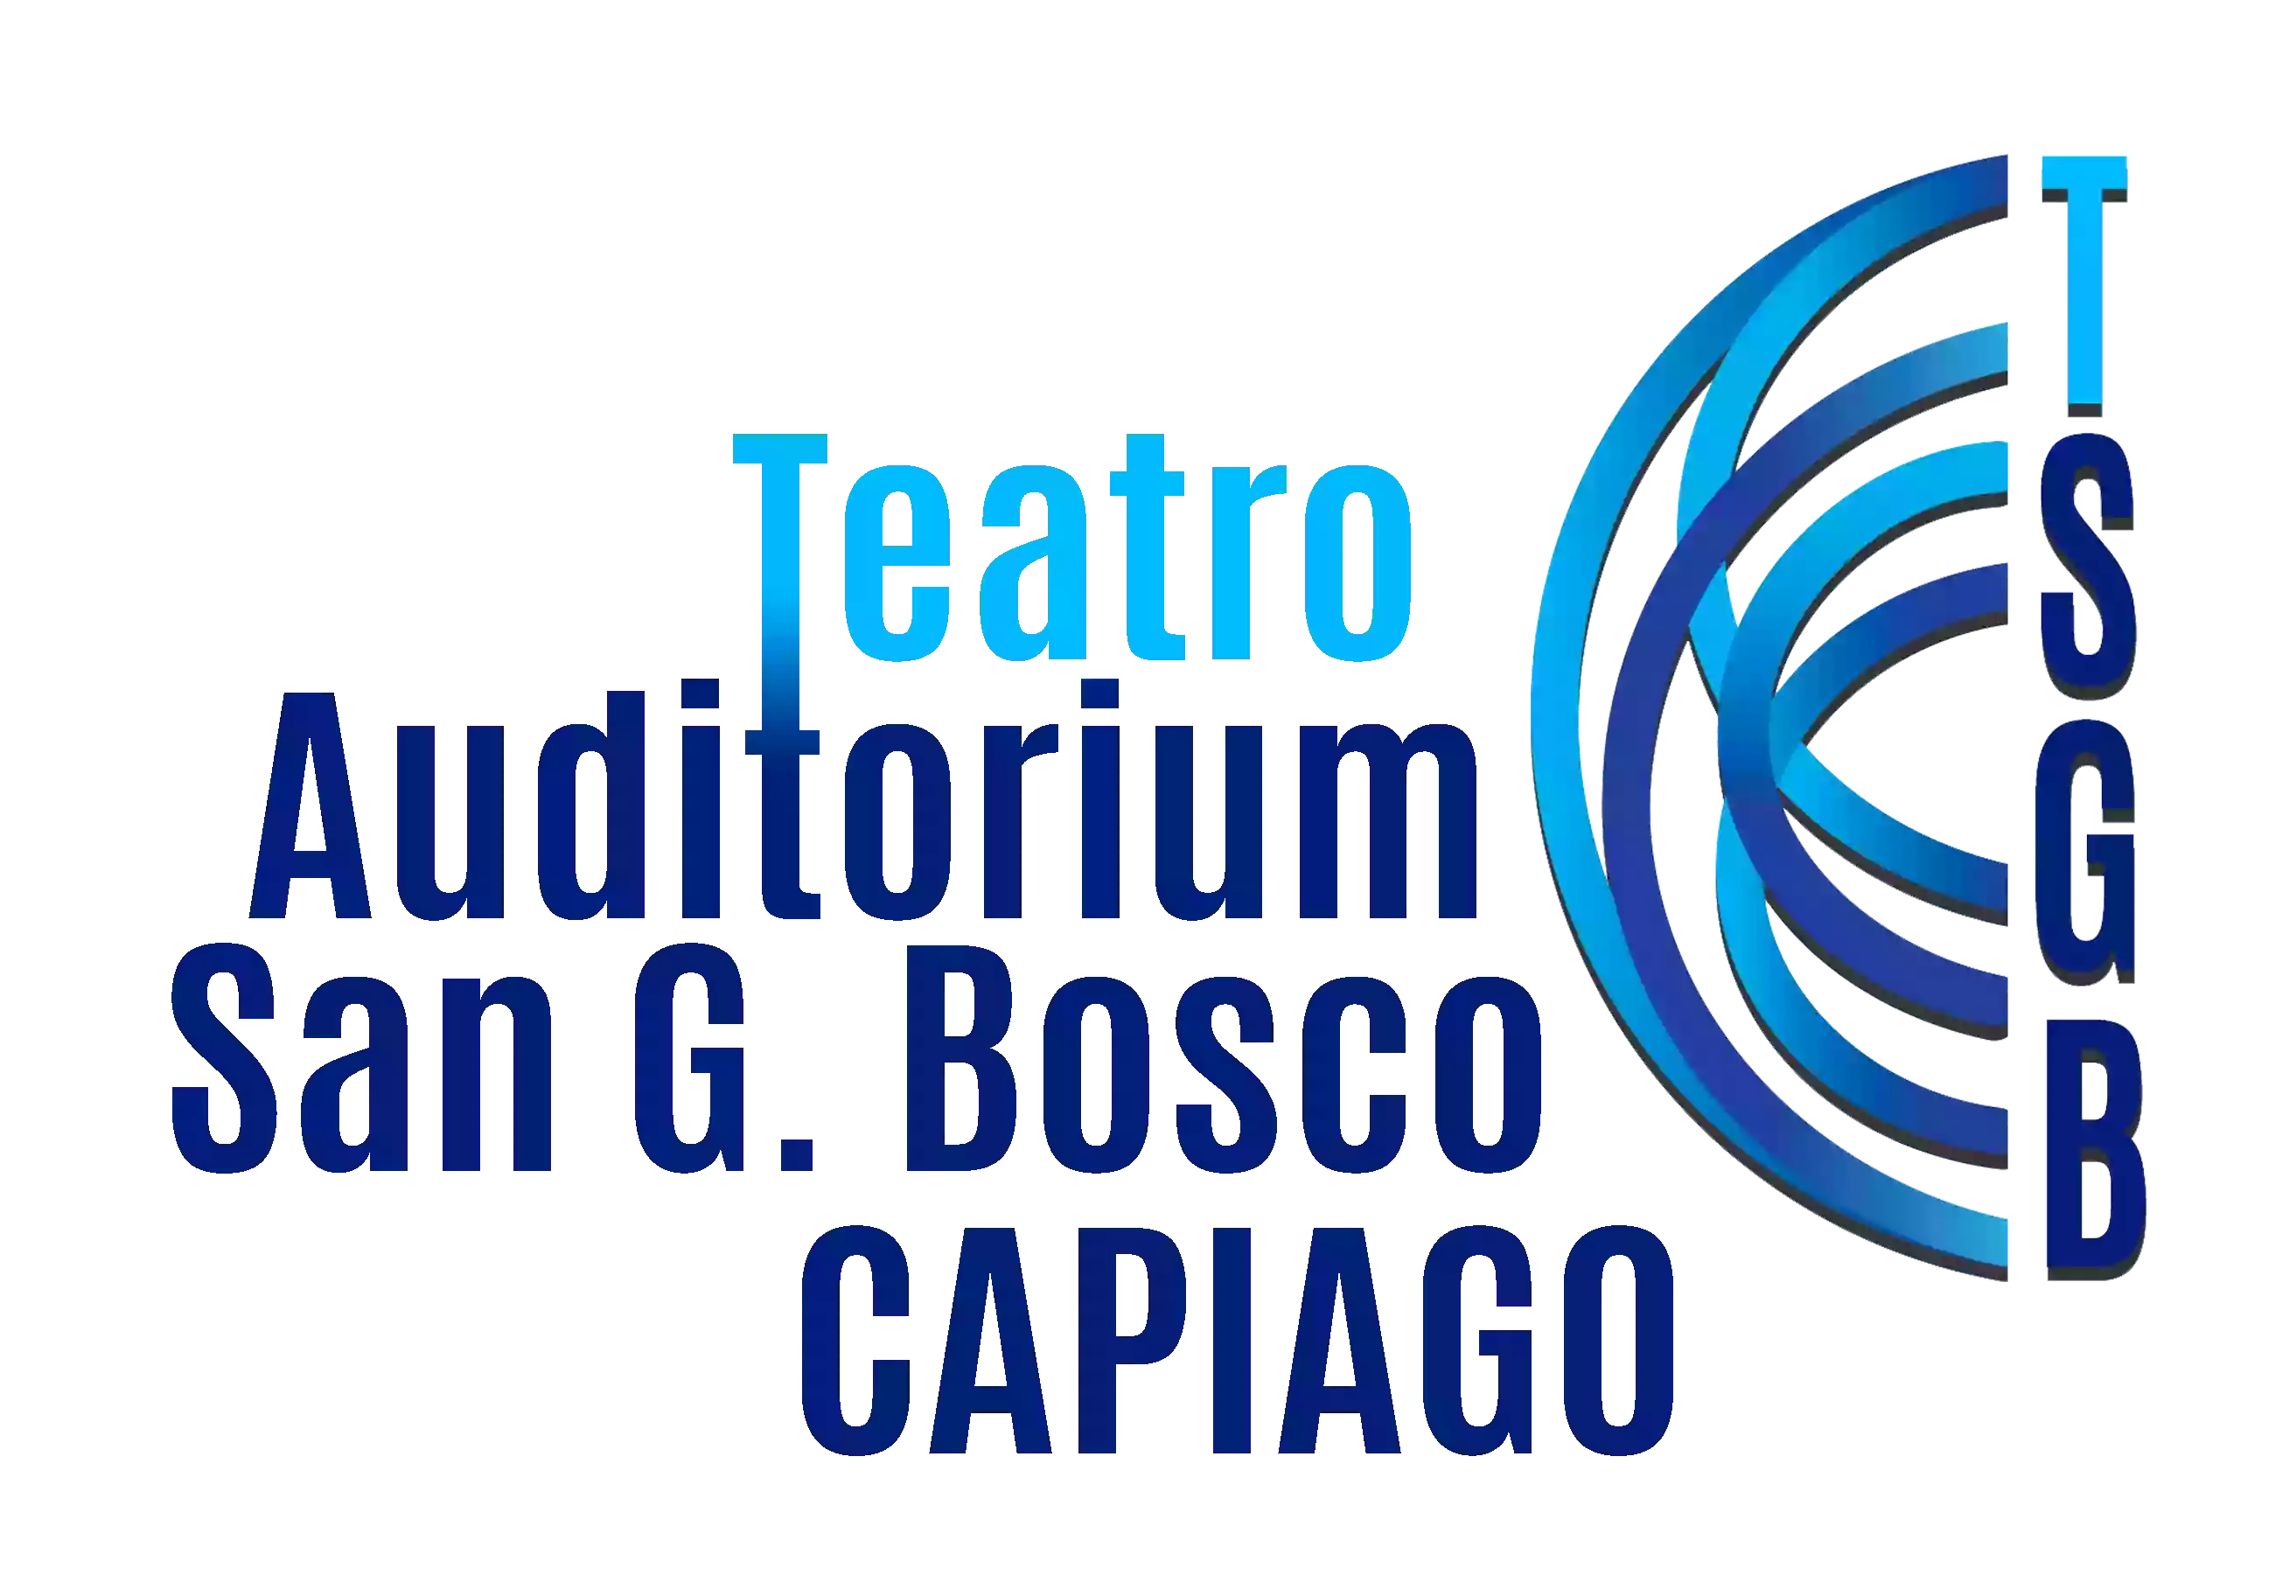 Teatro-Auditorium San Giovanni Bosco